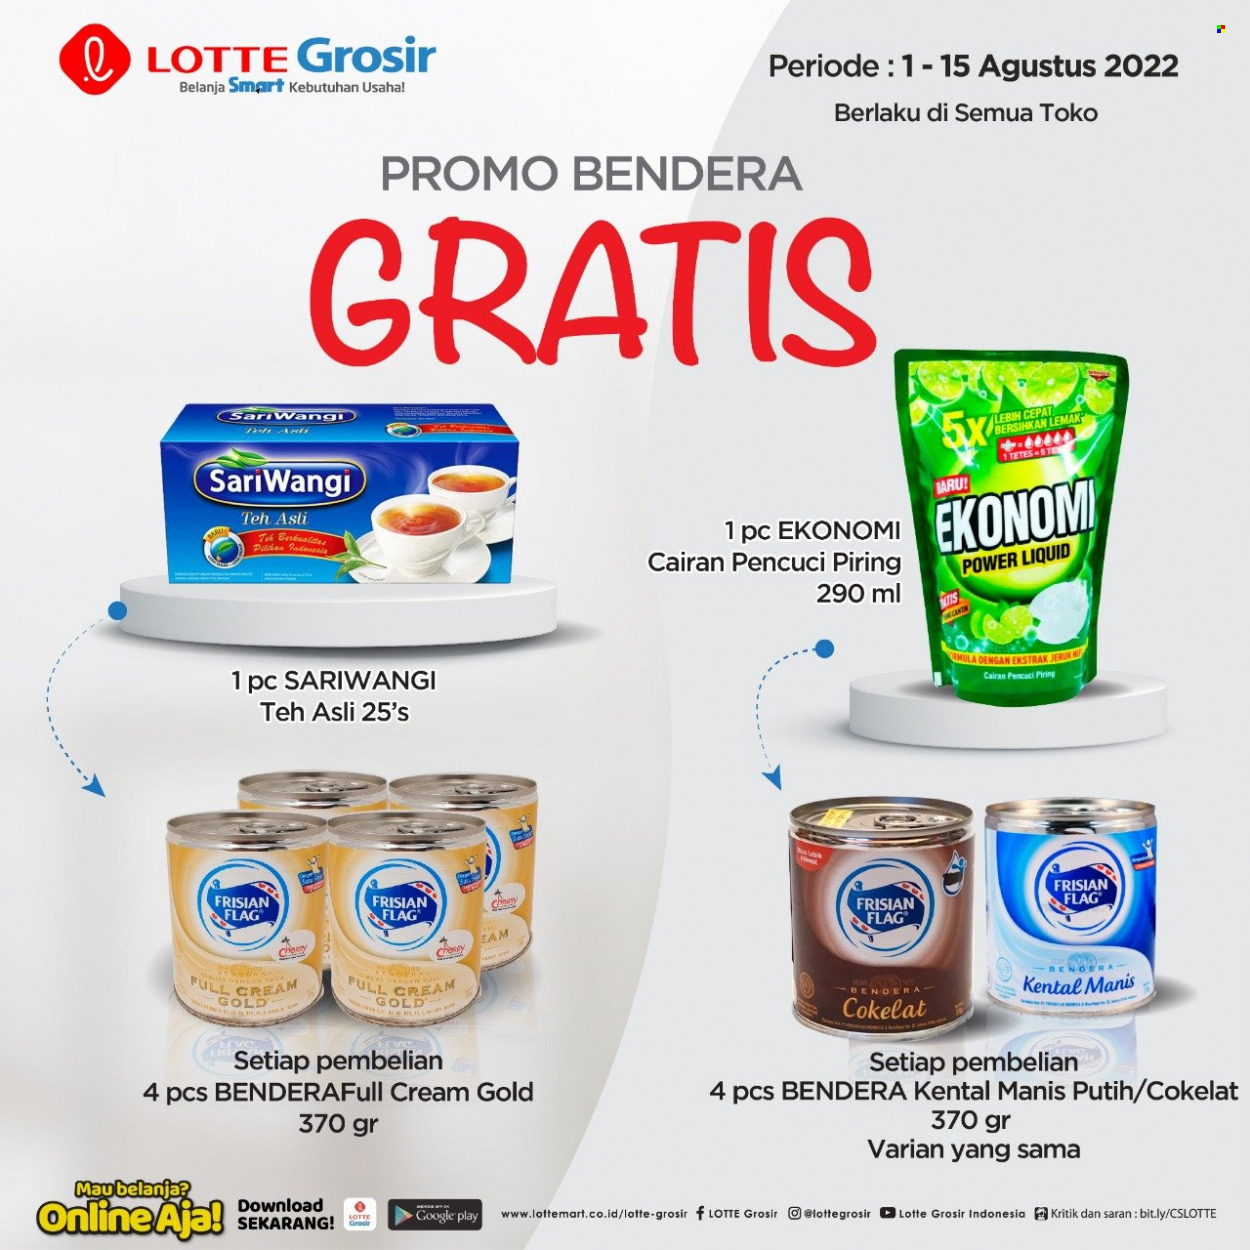 Promo LOTTE Grosir - 08/01/2022 - 08/15/2022 - Produk diskon - piring, jeruk, gold. Halaman 1.